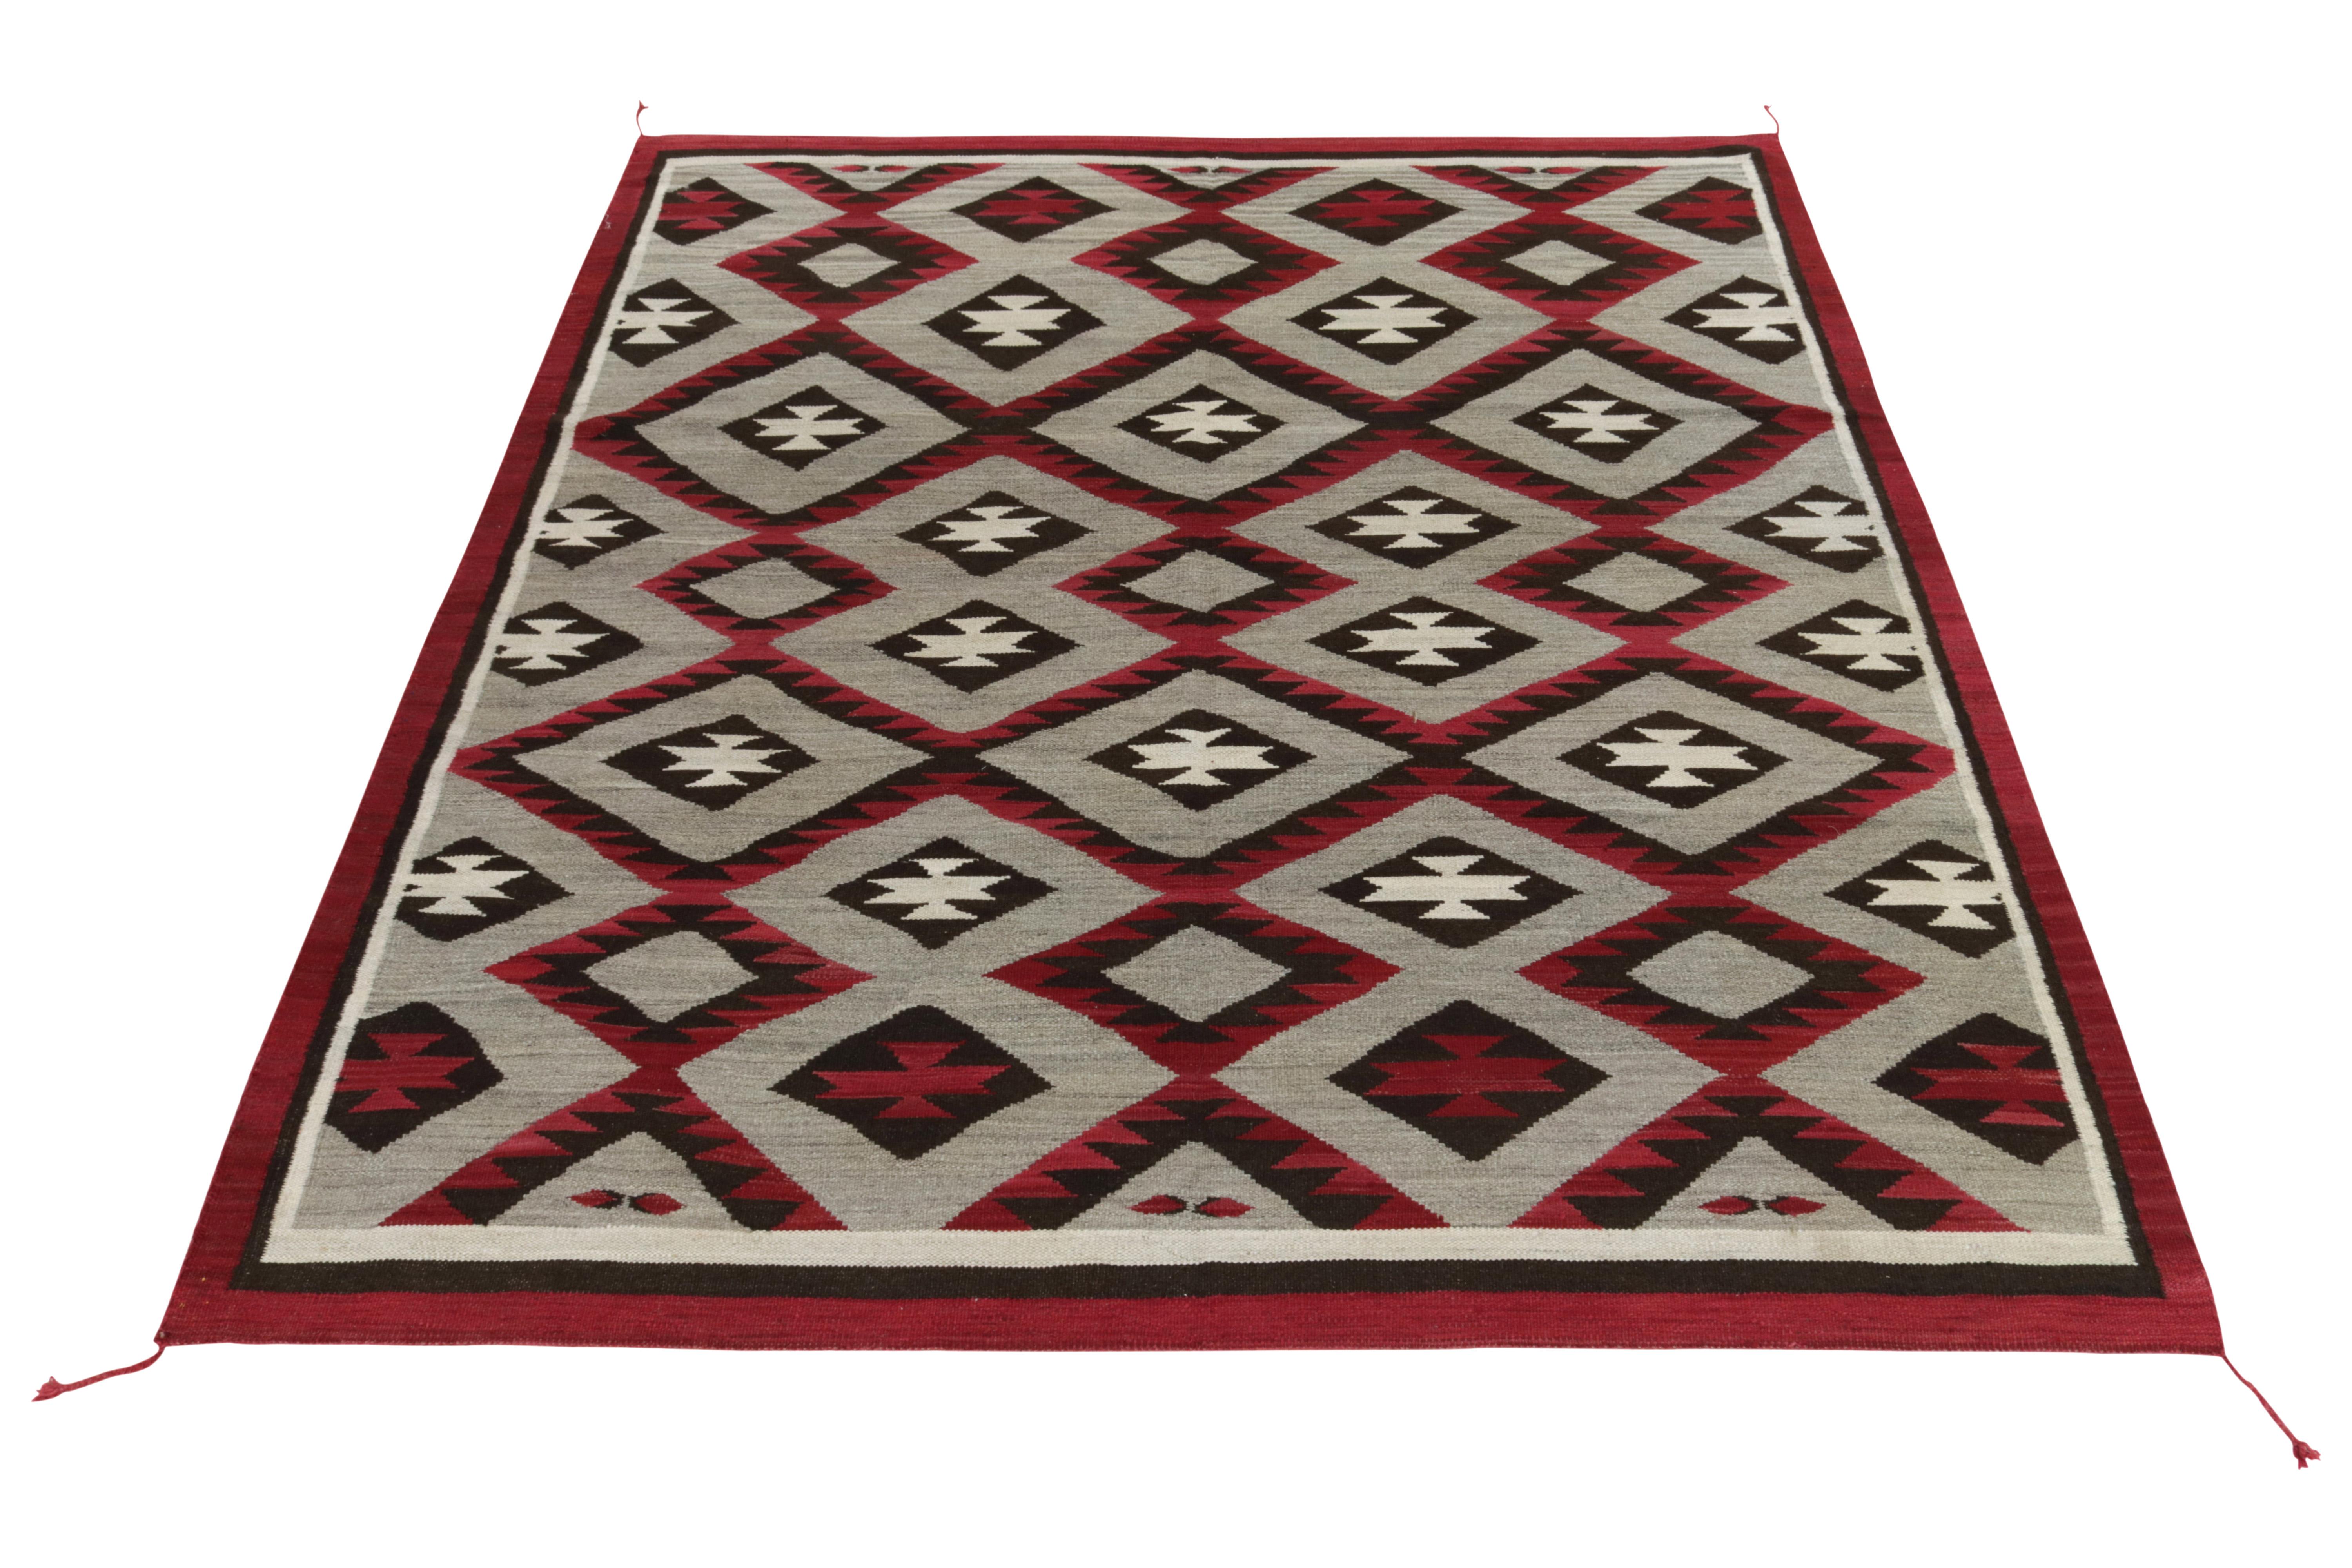 Tissé à la main en laine de haute qualité, ce tapis 8x10 est une ode au Rug & Kilim Navajo qui allie sensibilité tribale et réimagination moderne impeccable. Inspiré des tissages plats Navajo des années 1920, ce tissage plat présente un motif